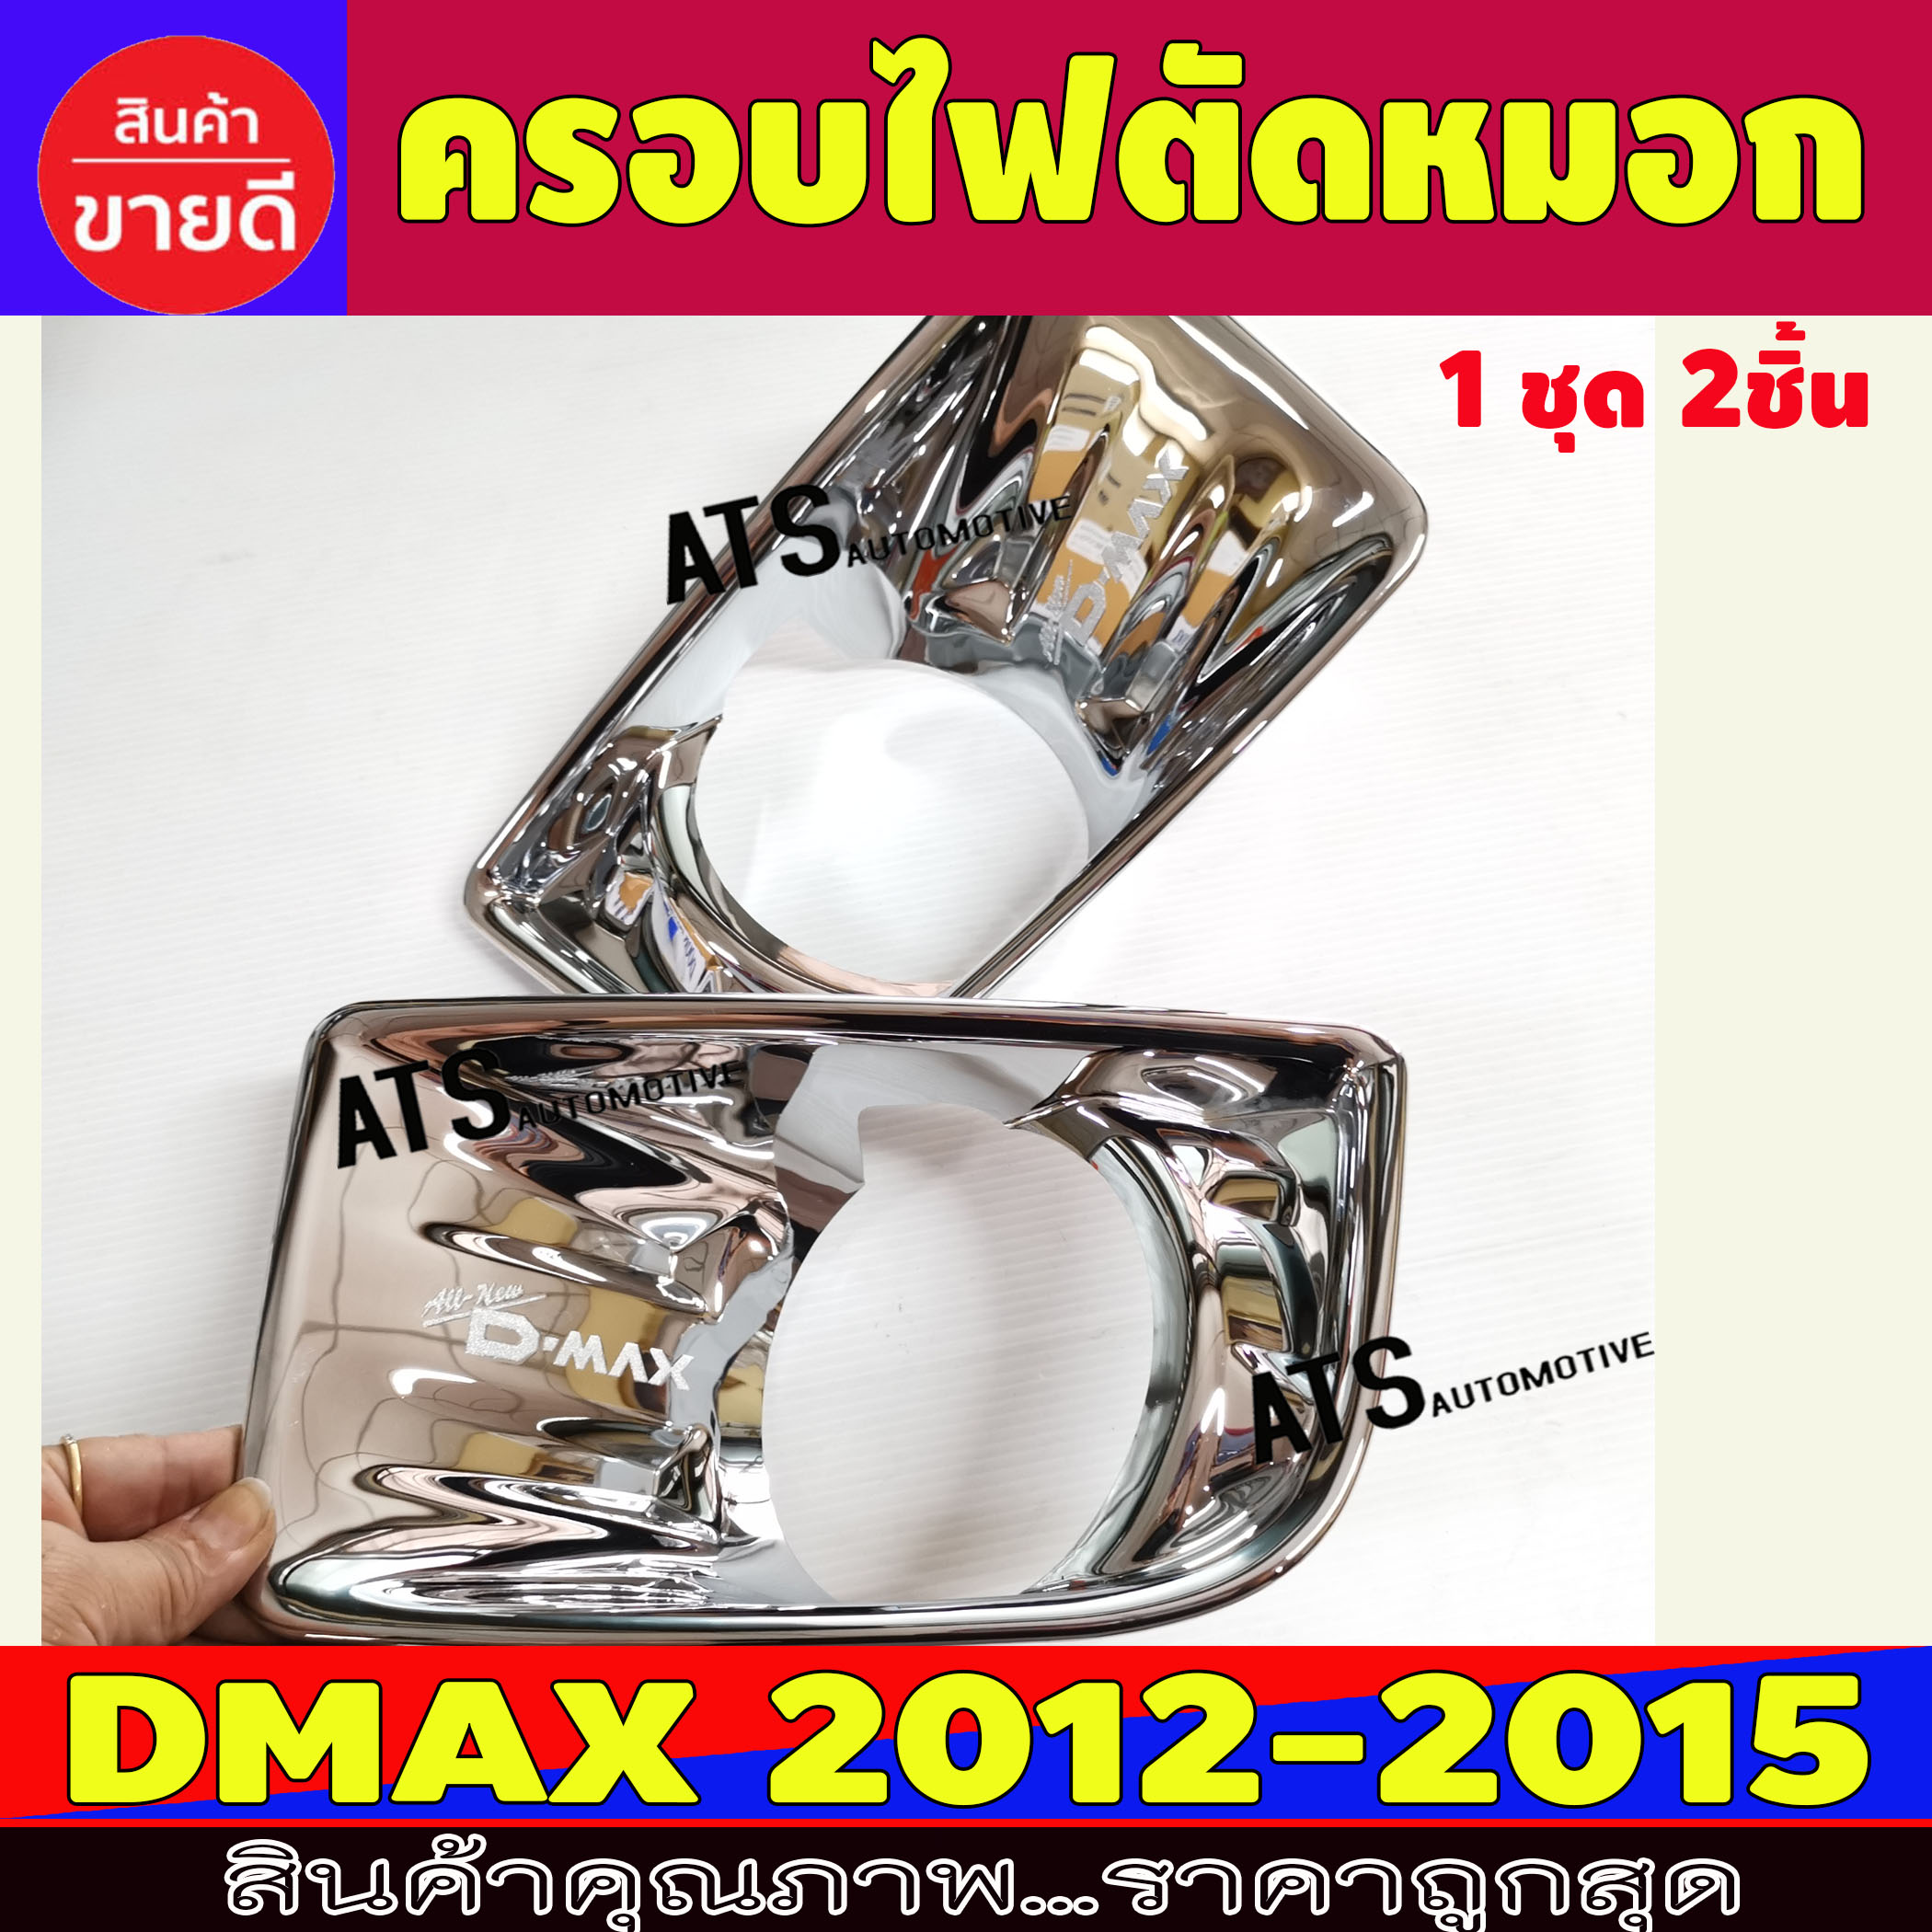 ครอบไฟตัดหมอกDMAX ครอบสปอร์ตไลท์ ชุปโครเมี่ยม อีซูซุ ดีแม็ก ดีแม็ค Isuzu D-Max Dmax 2012 2013 2014 2015 D